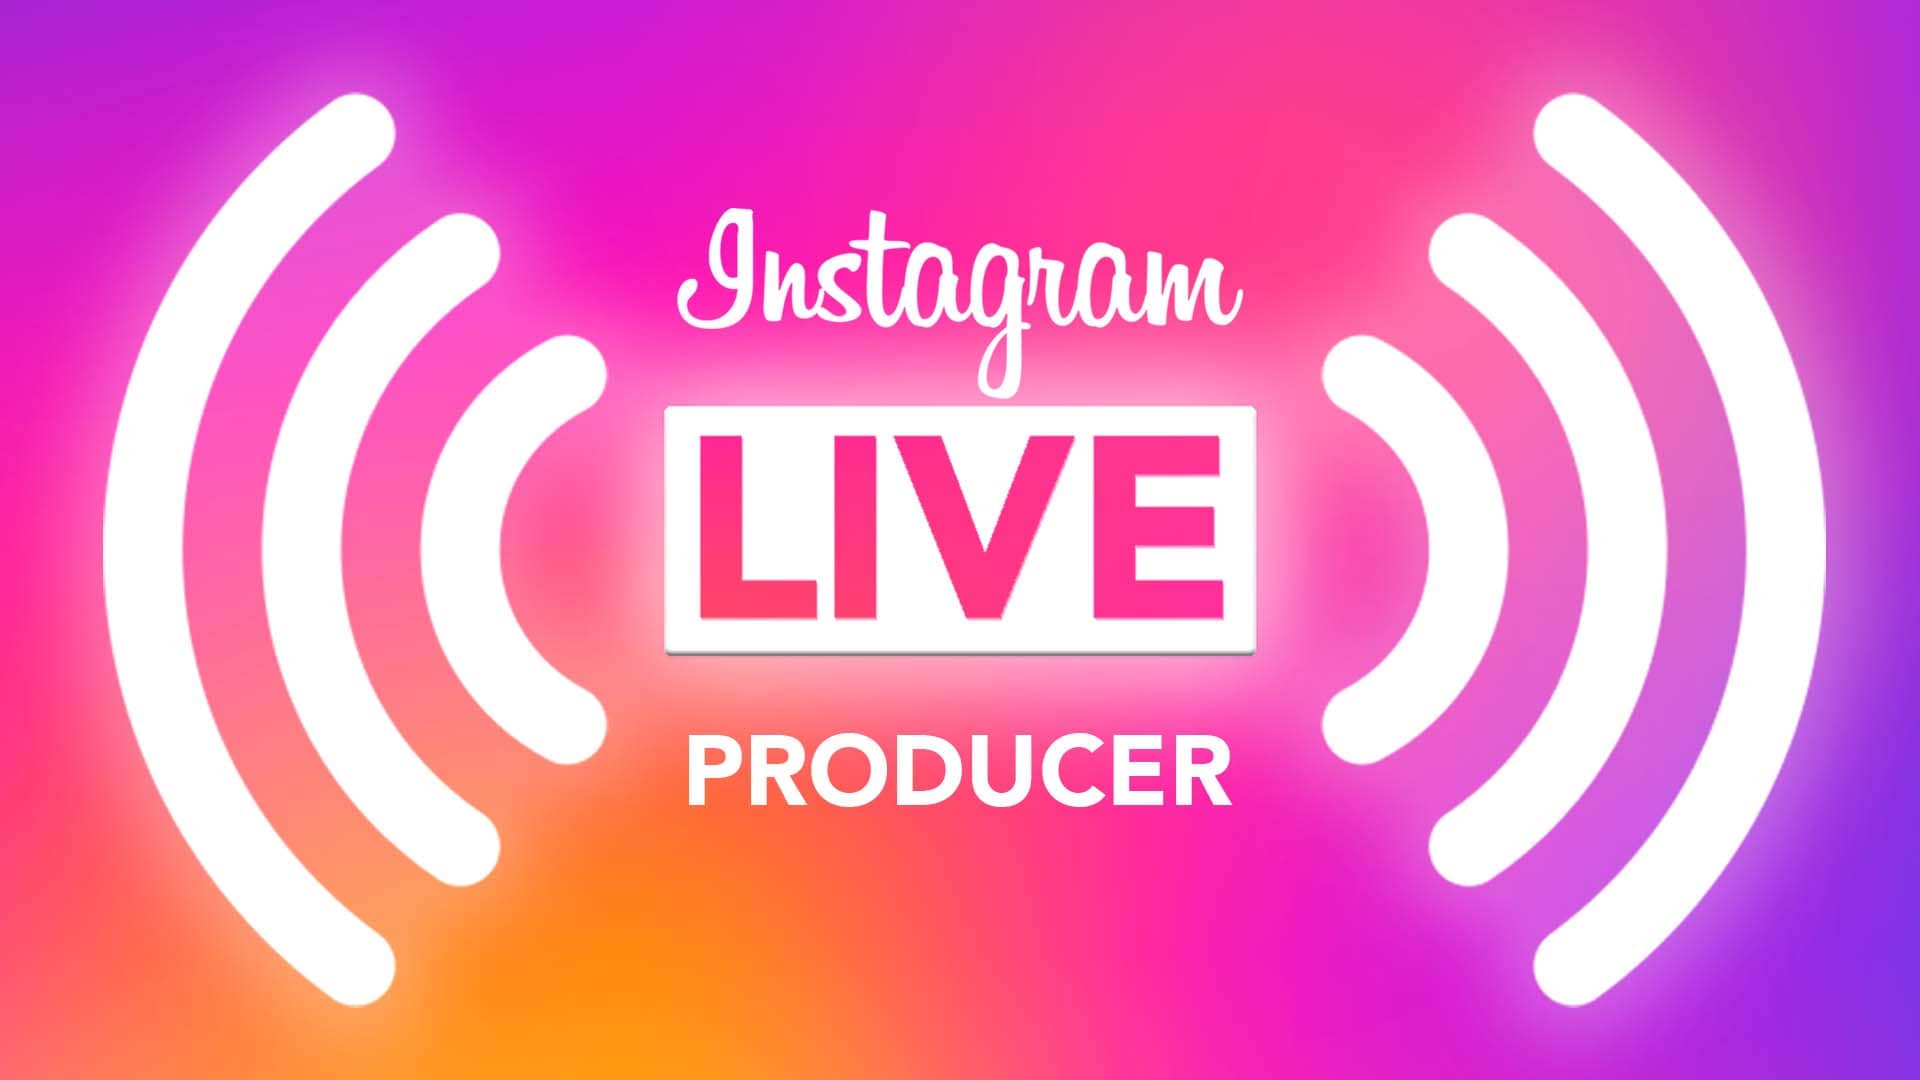 Instagram Live Producer